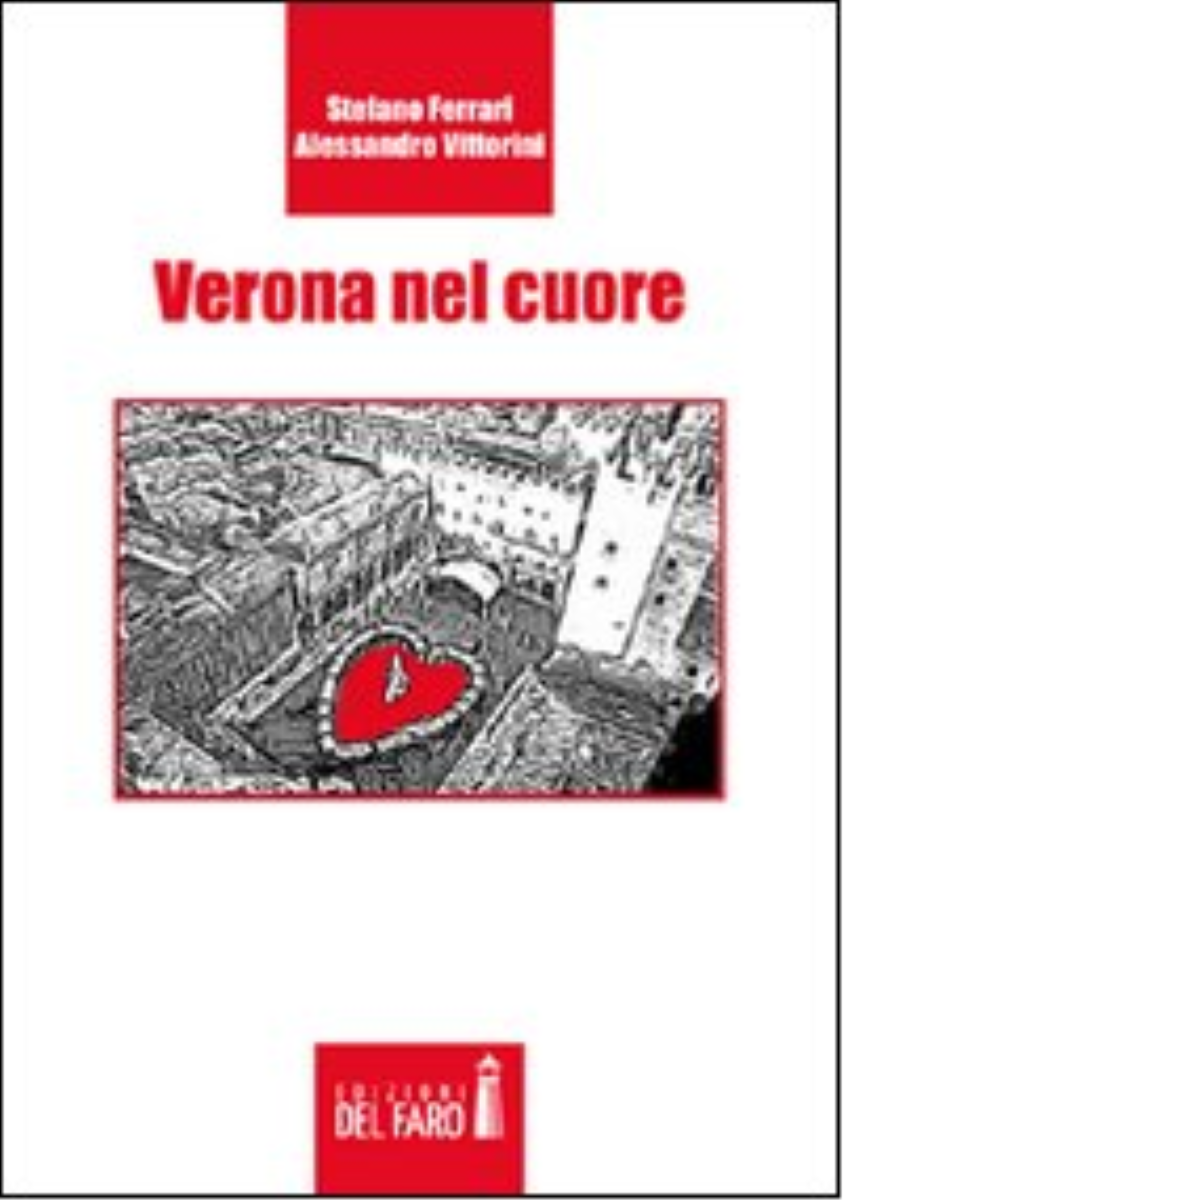 Verona nel cuore di Vittorini Alessandro; Ferrari Stefano - Del faro, 2012